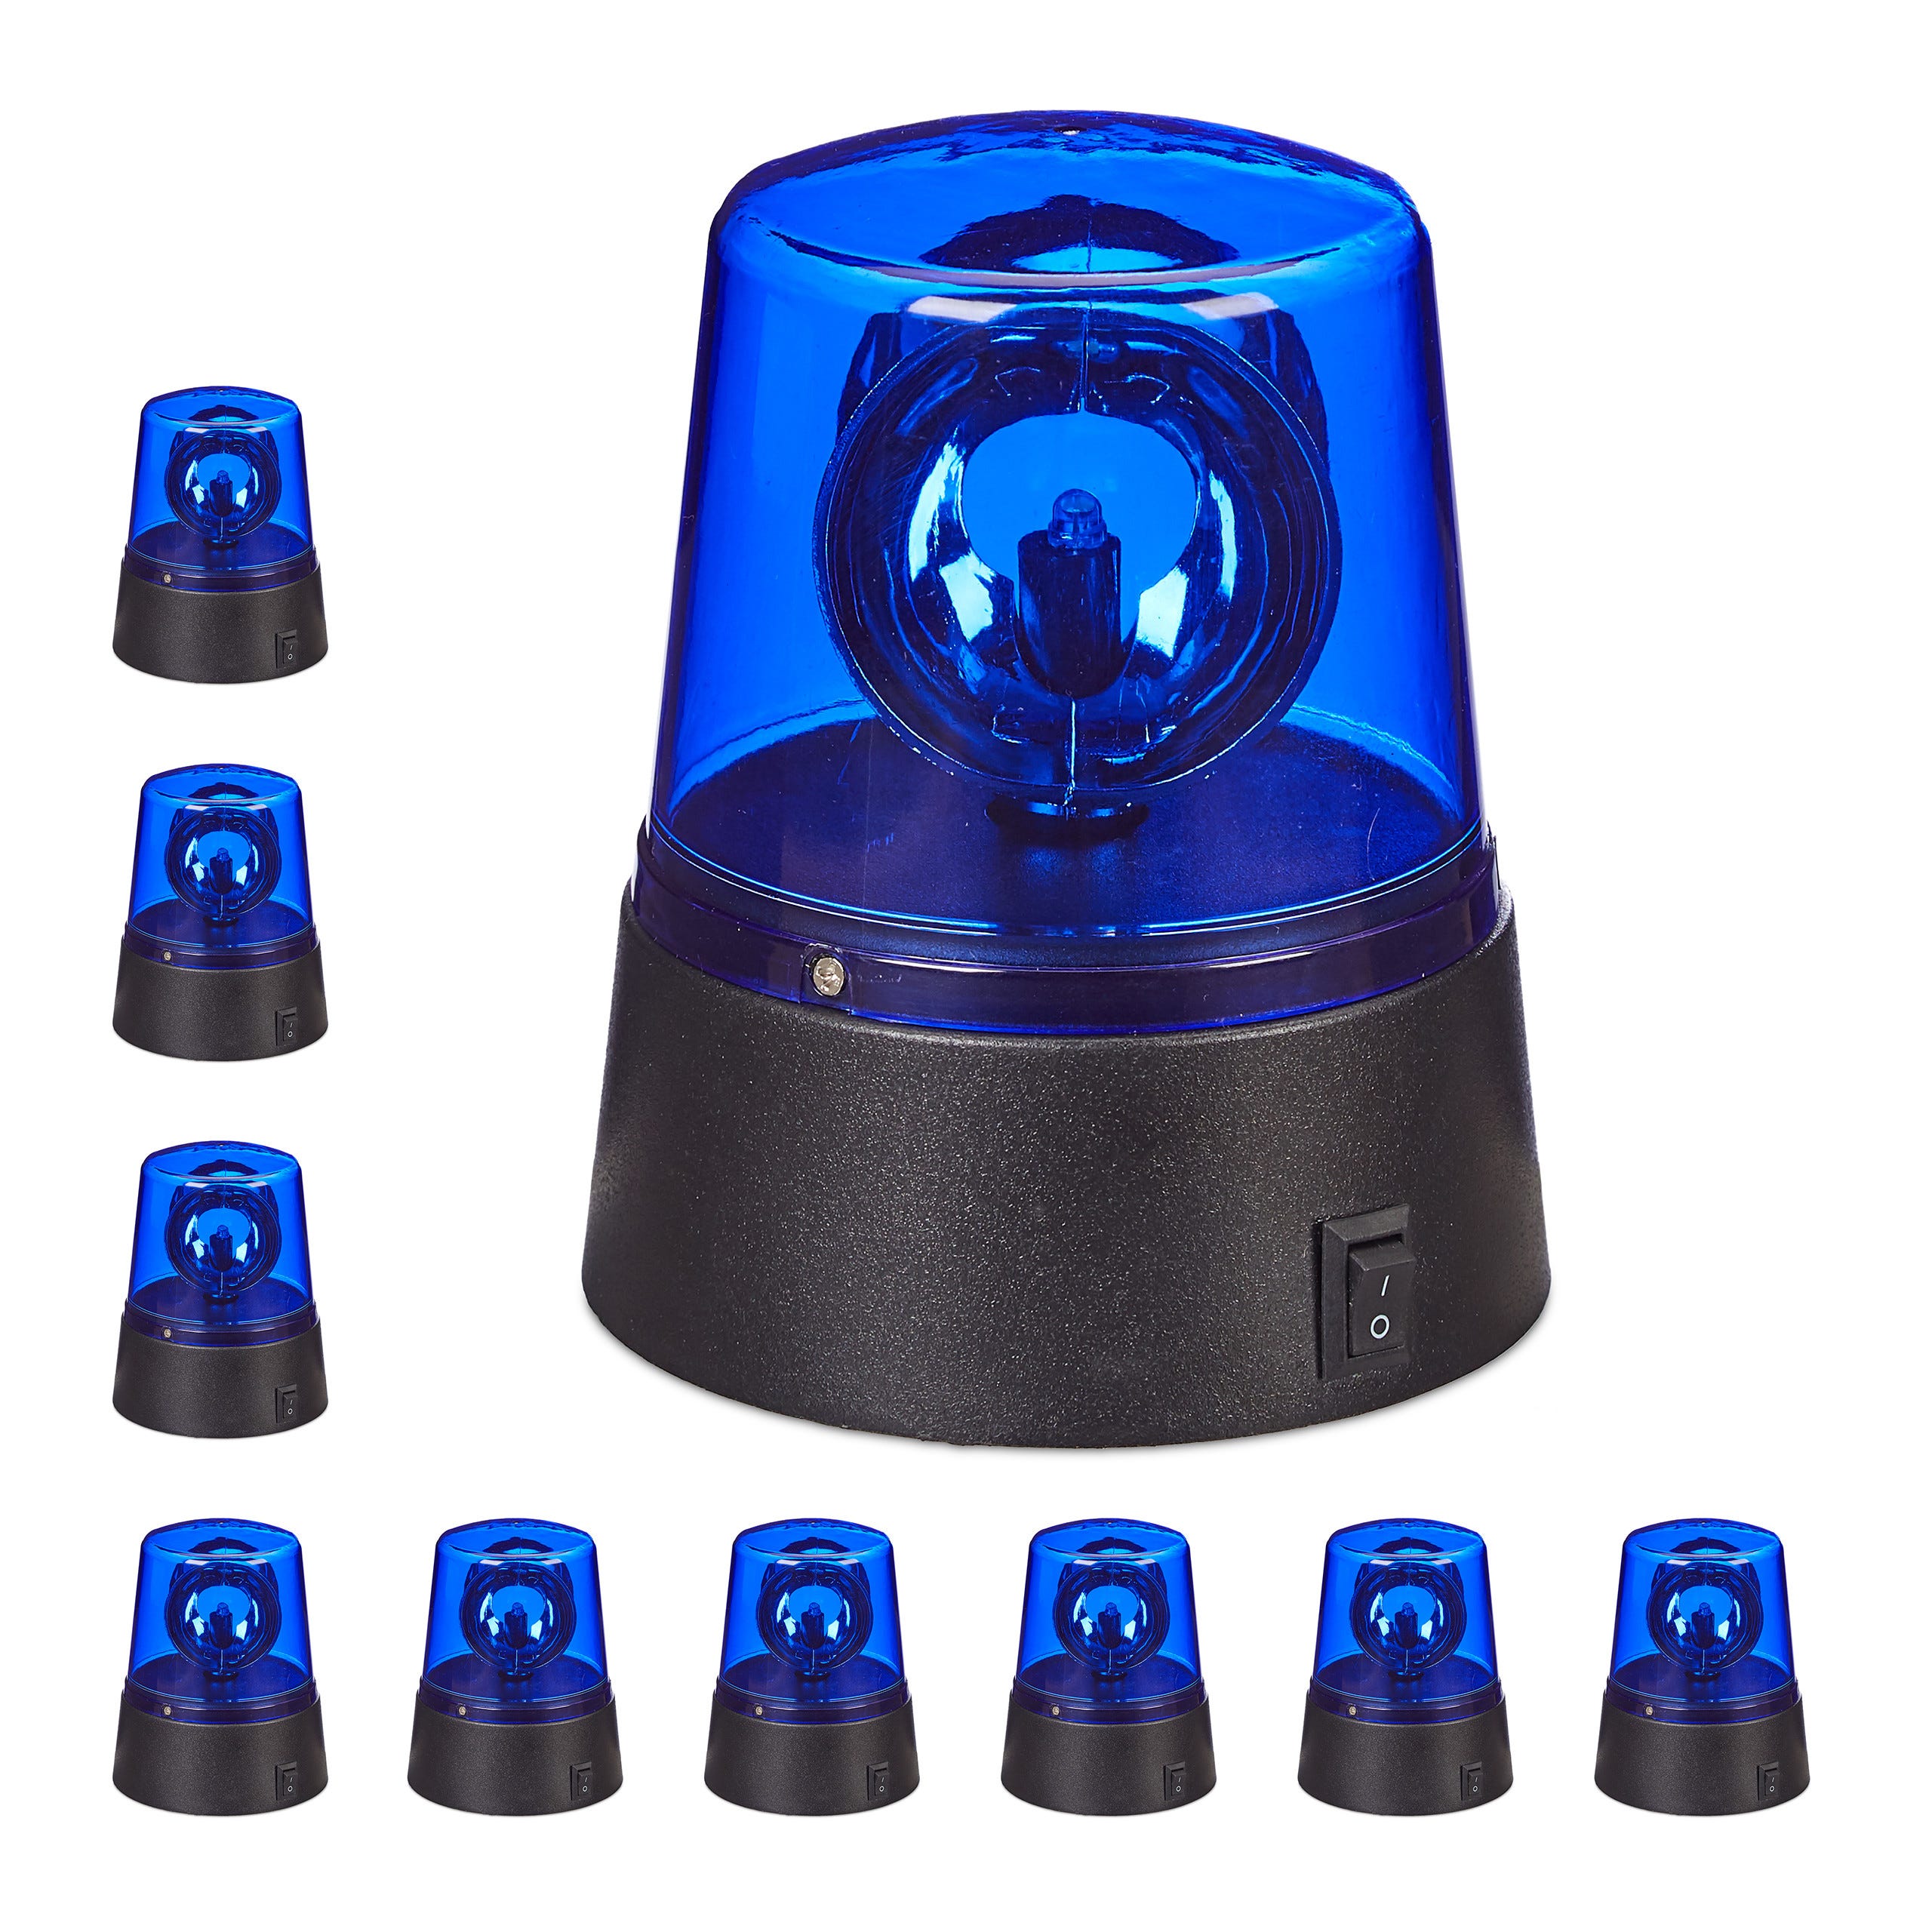 10x Polizia Party, LED Lampeggiante Blu con Riflettore Girevole a